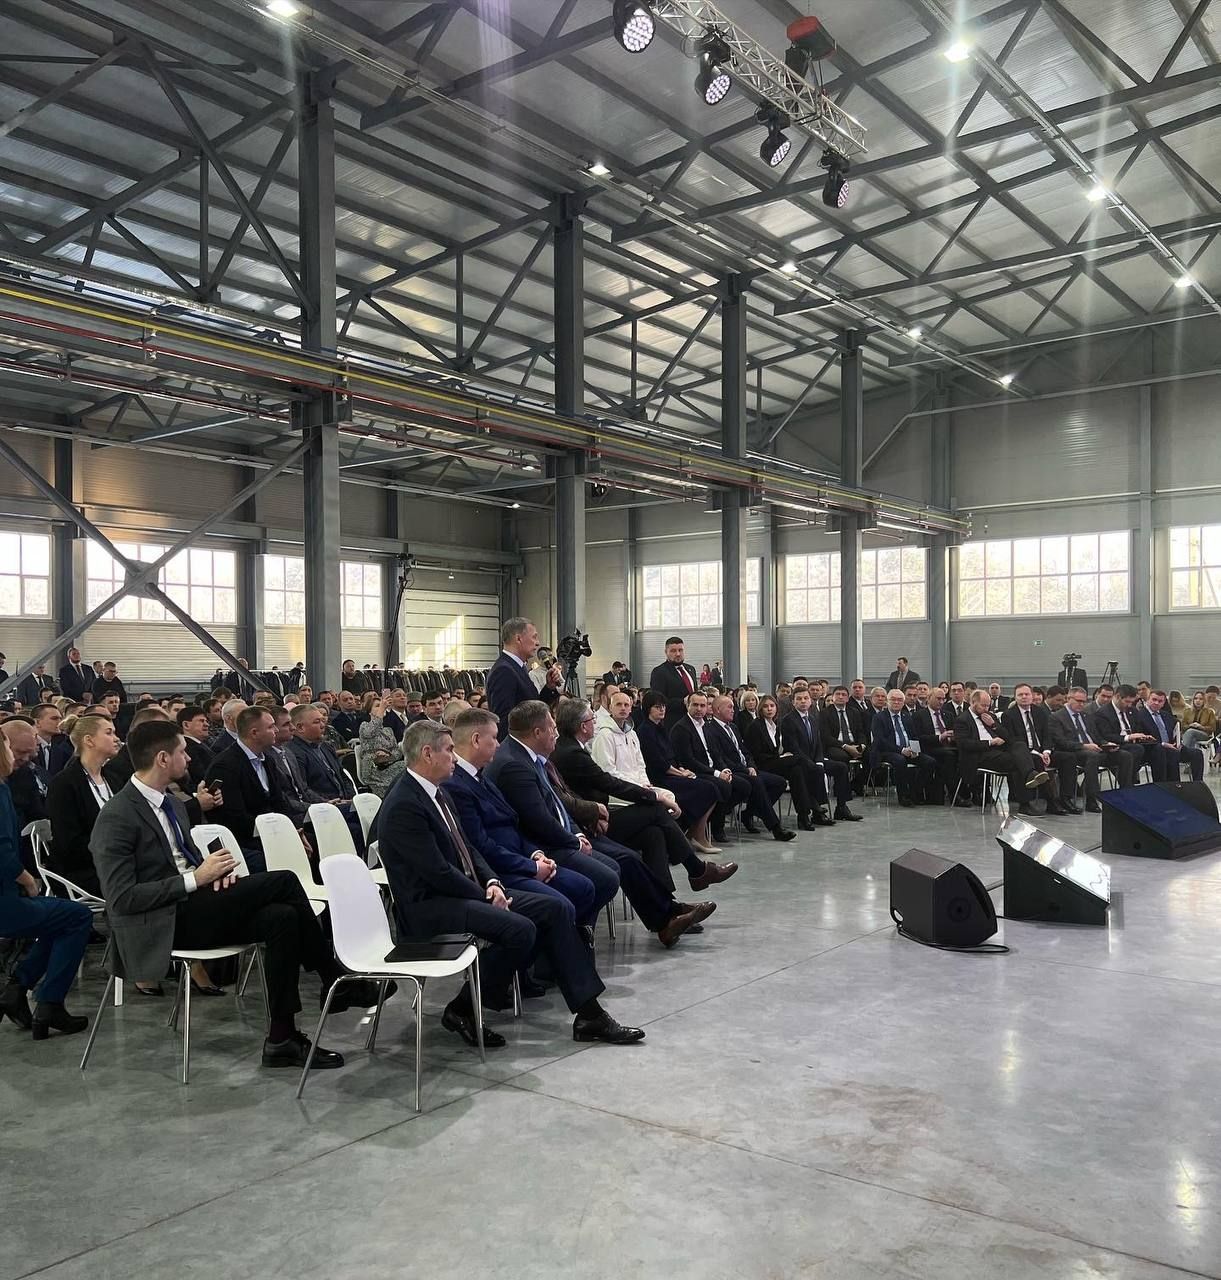 Сегодня в Высокогорском районе на встрече с Миннихановым собрались представители бизнес-индустрии со всей республики